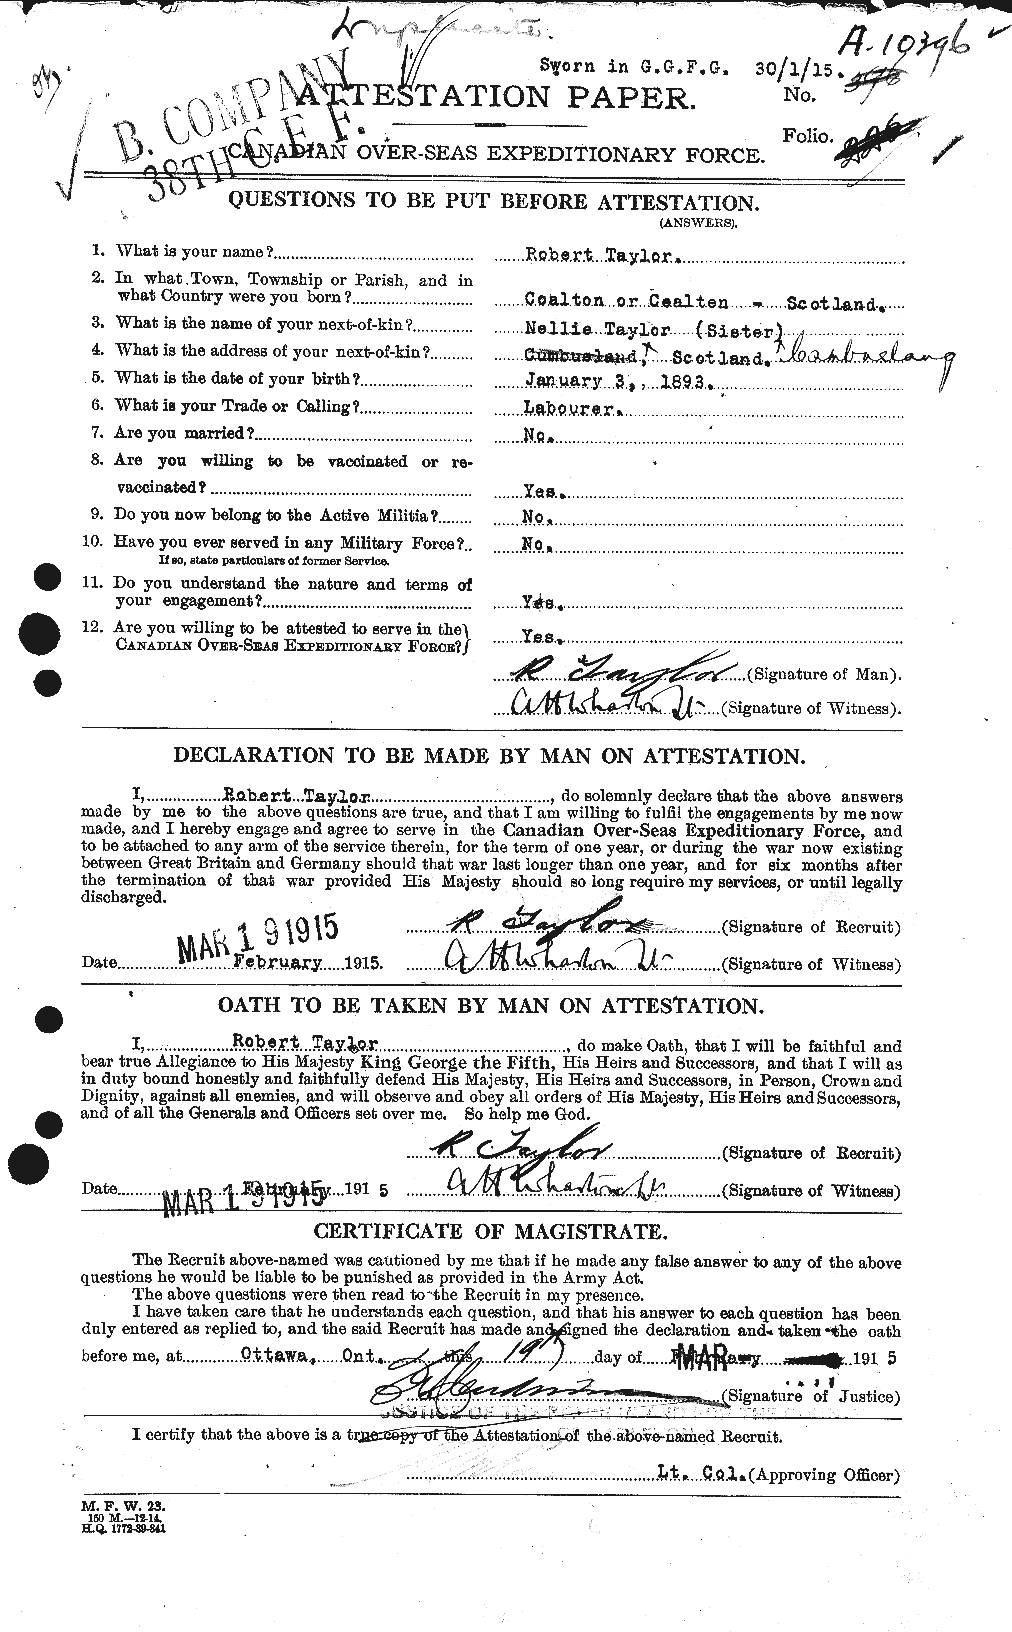 Dossiers du Personnel de la Première Guerre mondiale - CEC 627426a